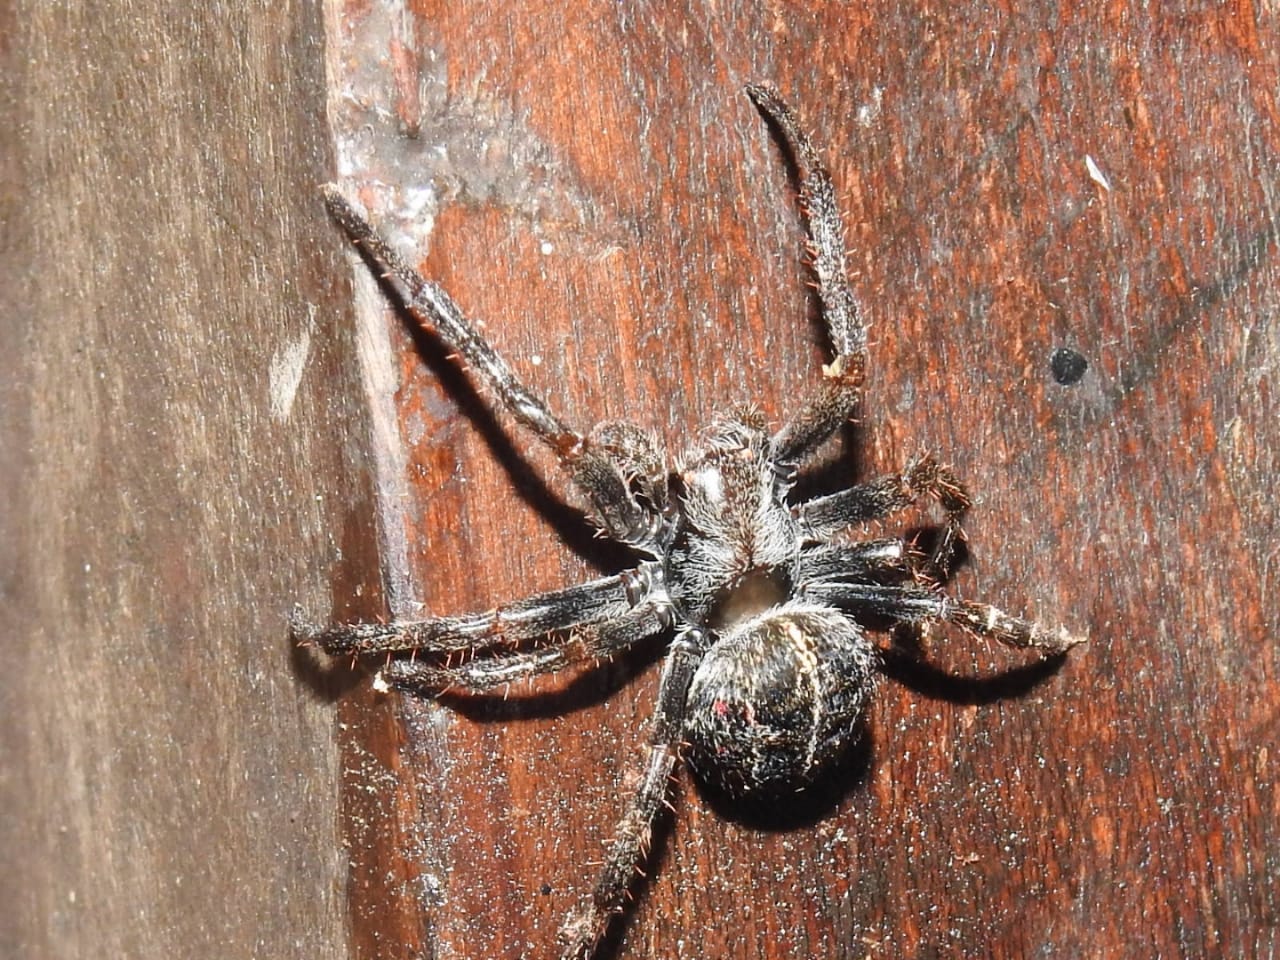 Detalle de la araña tejedora colonial. Foto: Carlos Ortega